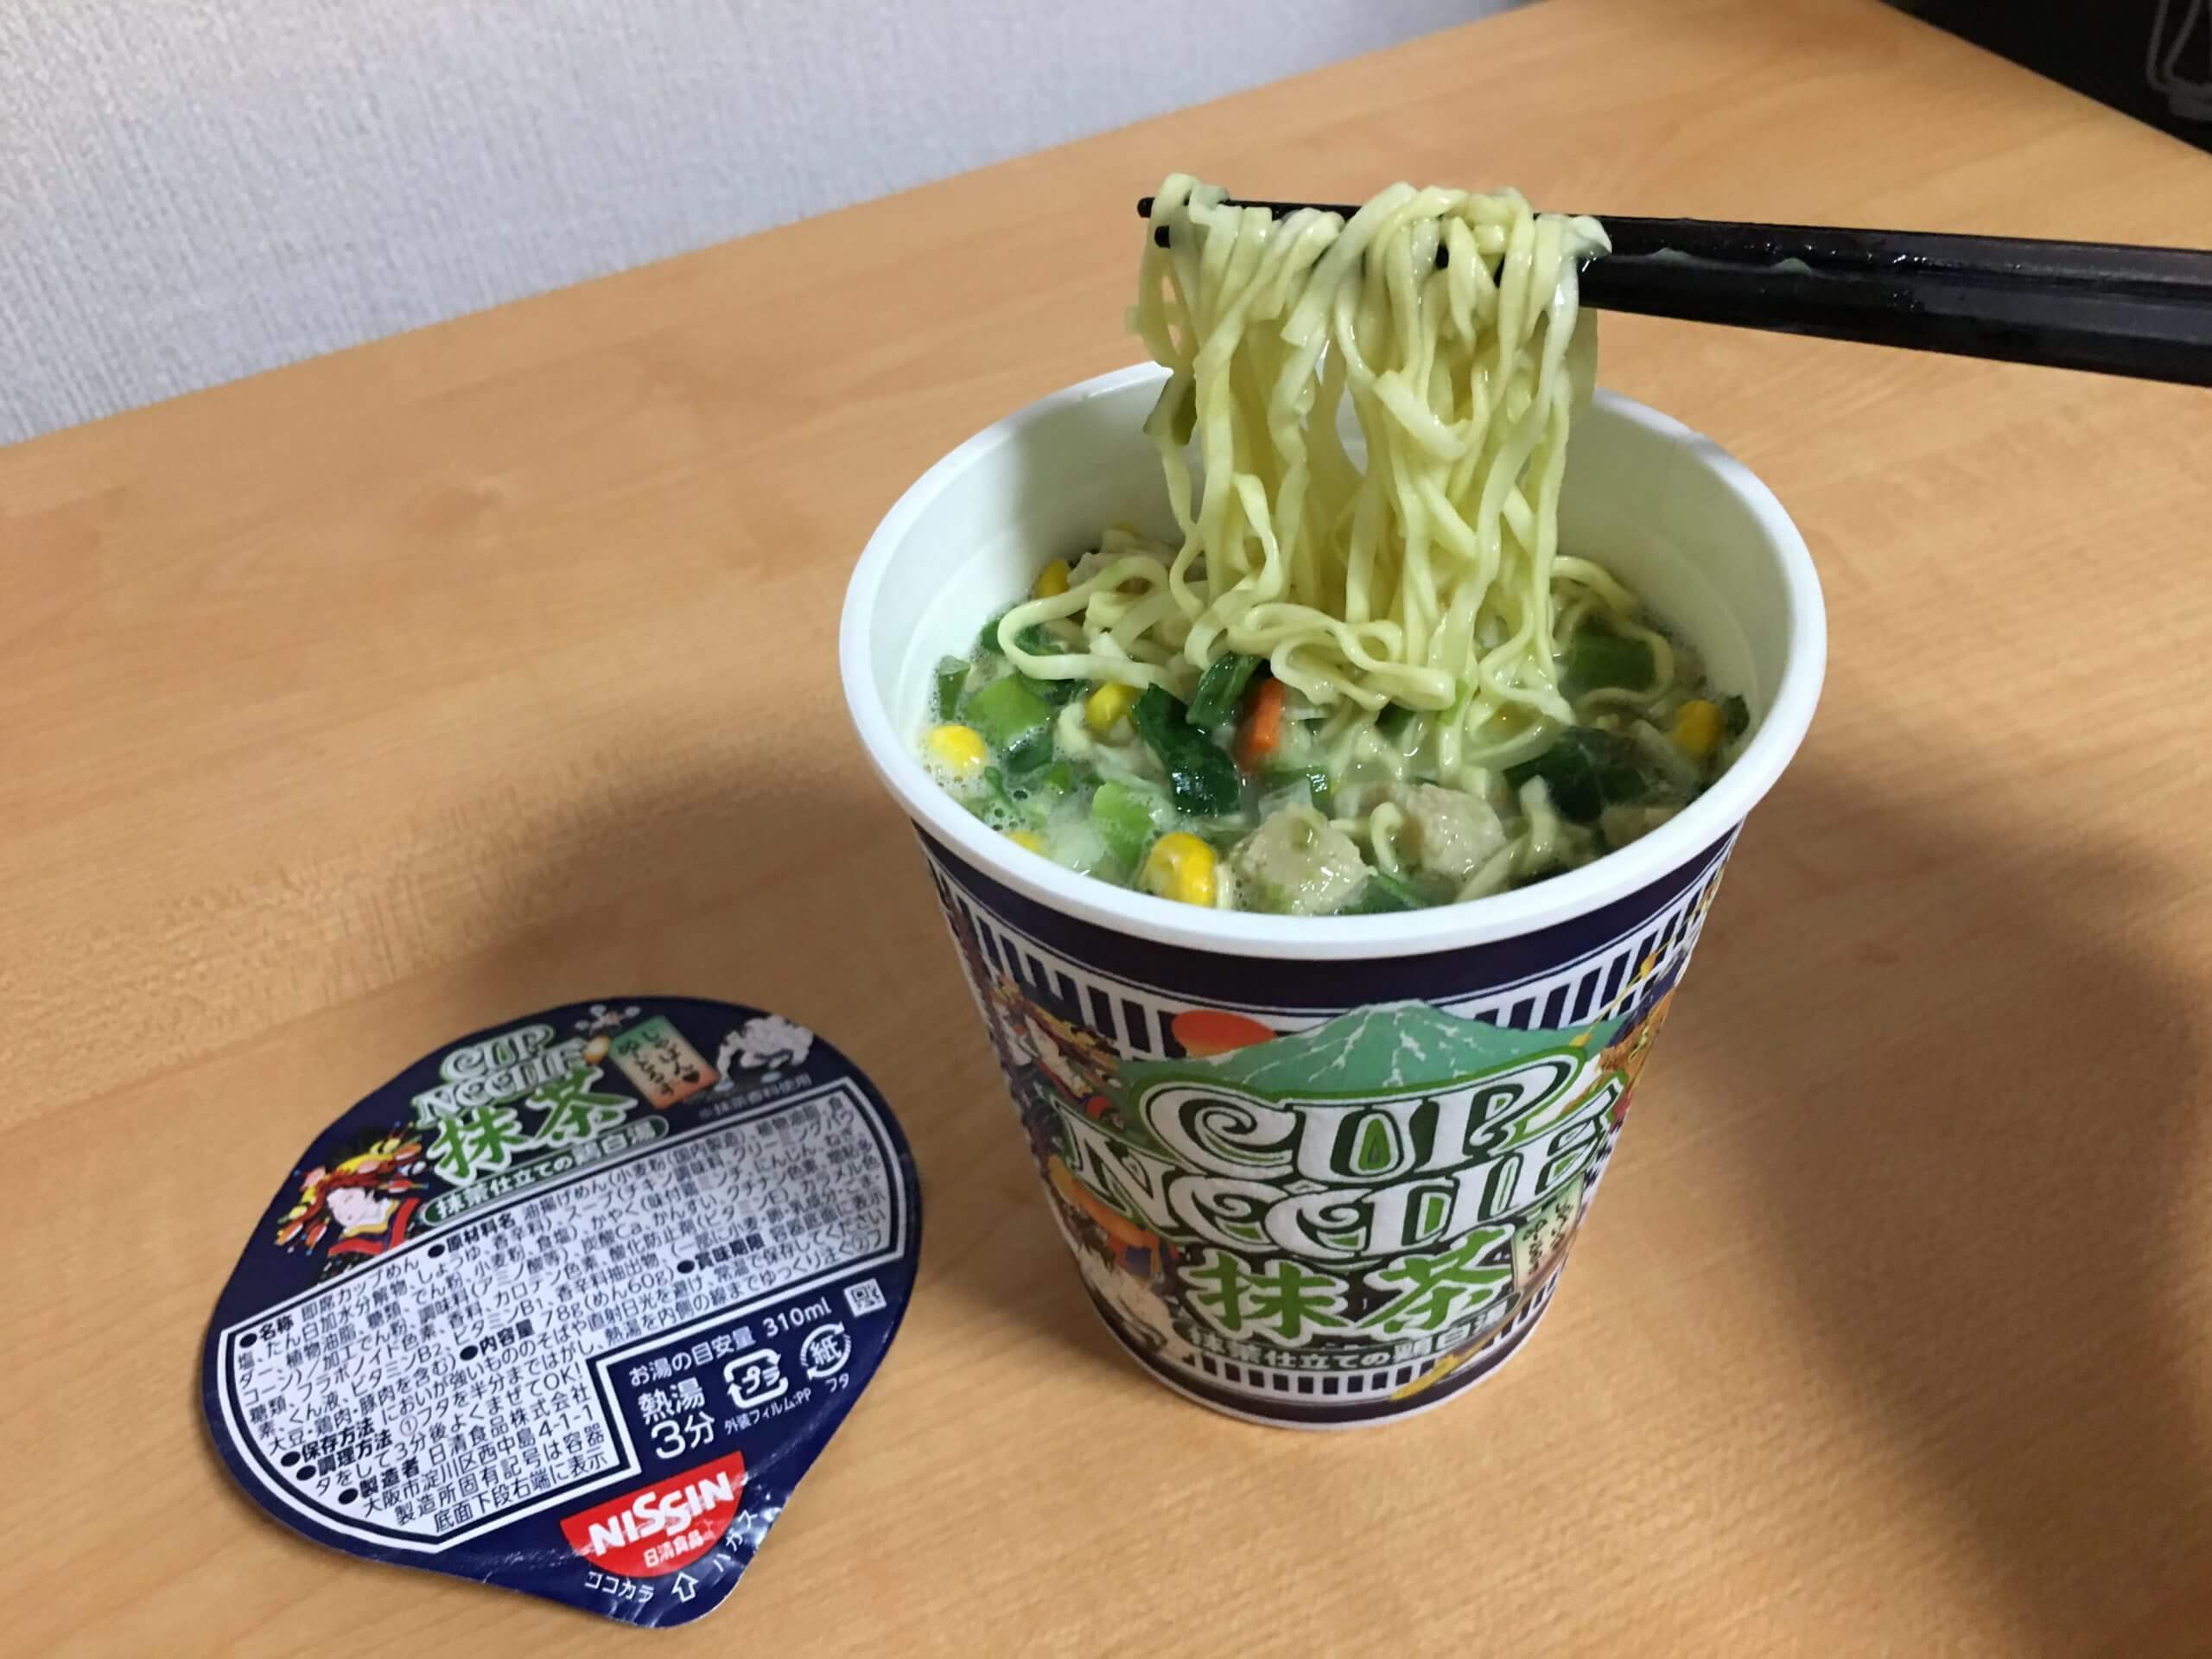 Weirdest Japanese Food 11 - nissin matcha ramen